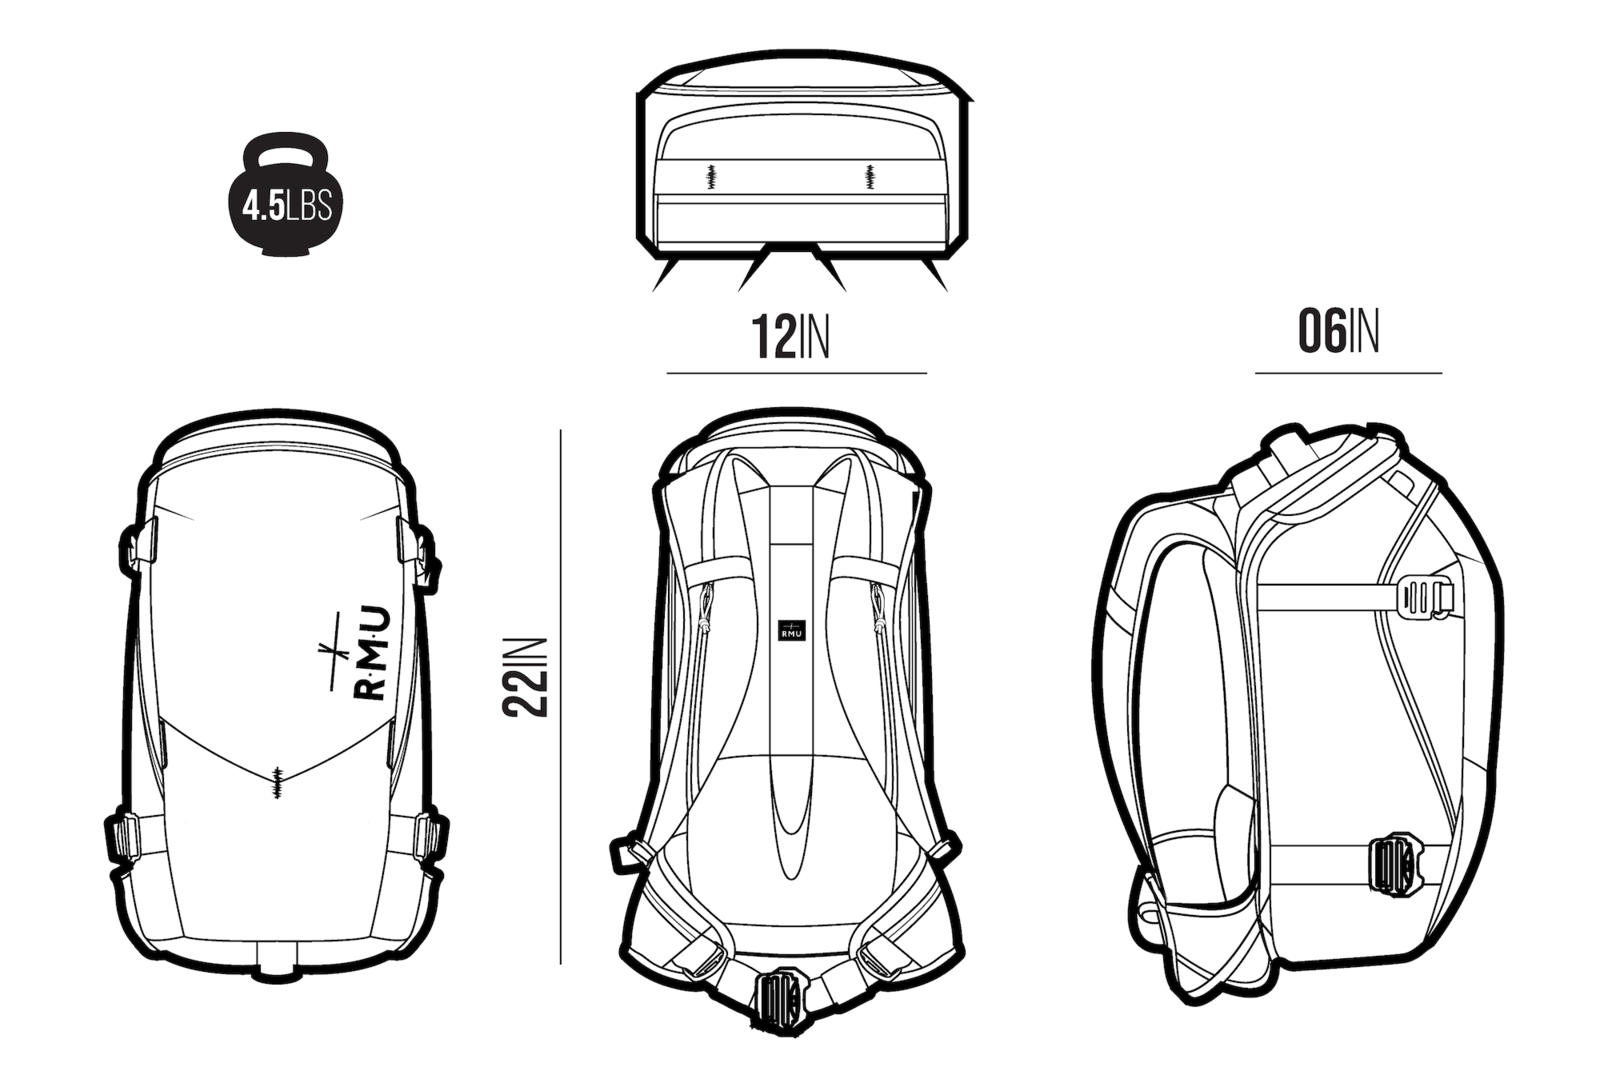 RMU | Core Pack 35 L Backpack - Deep Ocean Blue, Backpack, RMU, Defiance Outdoor Gear Co.